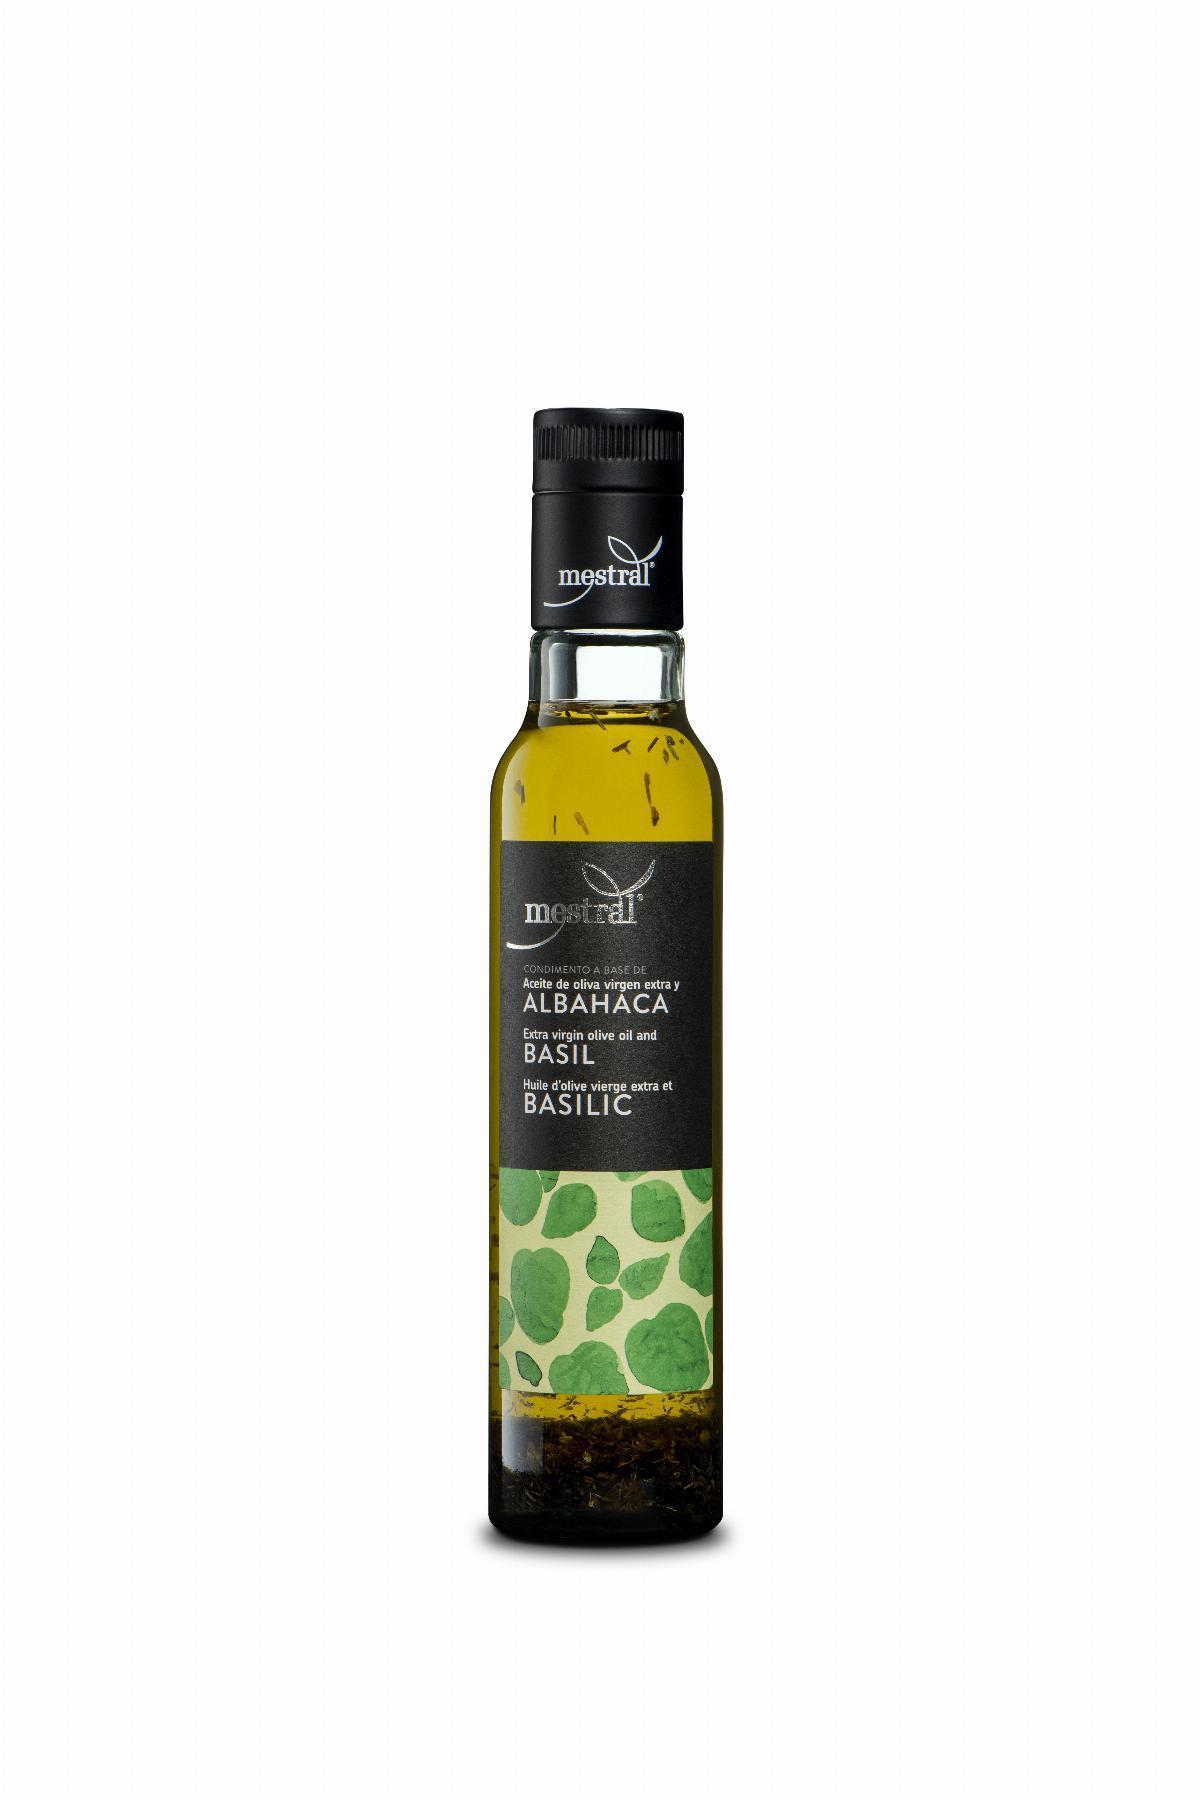 Olis i infusionats - Condiment preparat a base d'oli d'oliva i alfàbrega amp. Mestral 250 ml - Mestral Cambrils